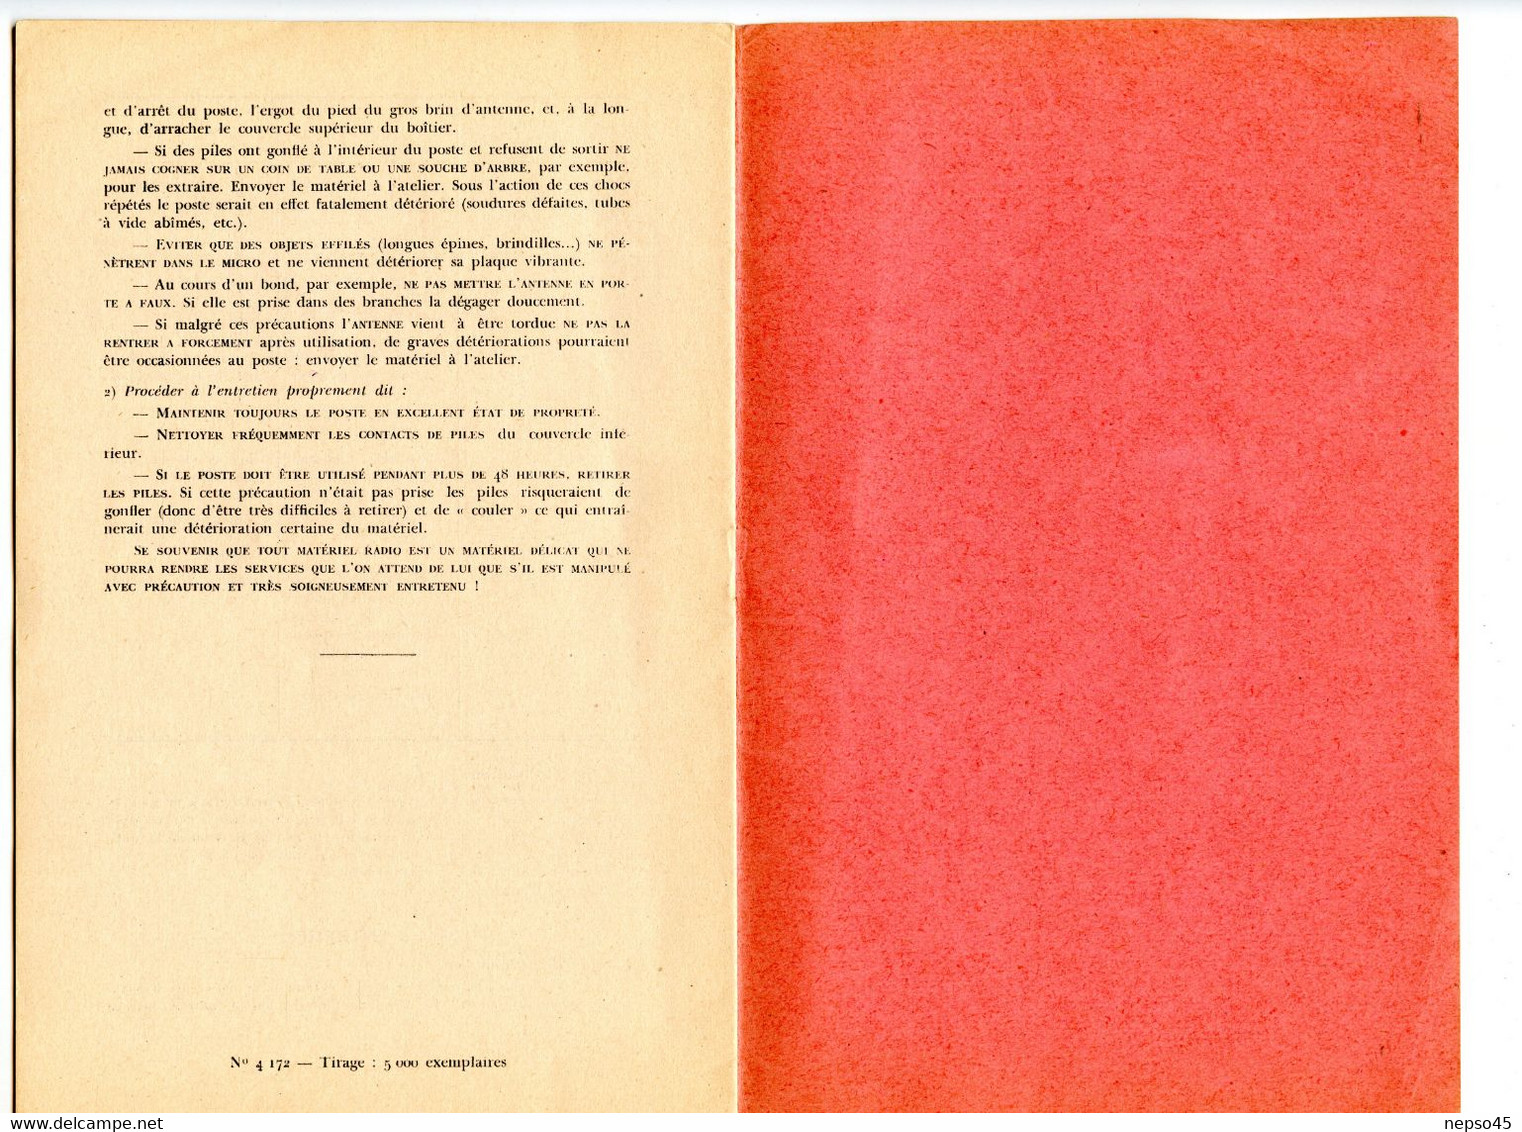 Poste Radio S.C.R. 536.notice d'emploi.Ecole formation d'officiers d'active.Coetquidan 1951.Librairie militaire St-Cyr.